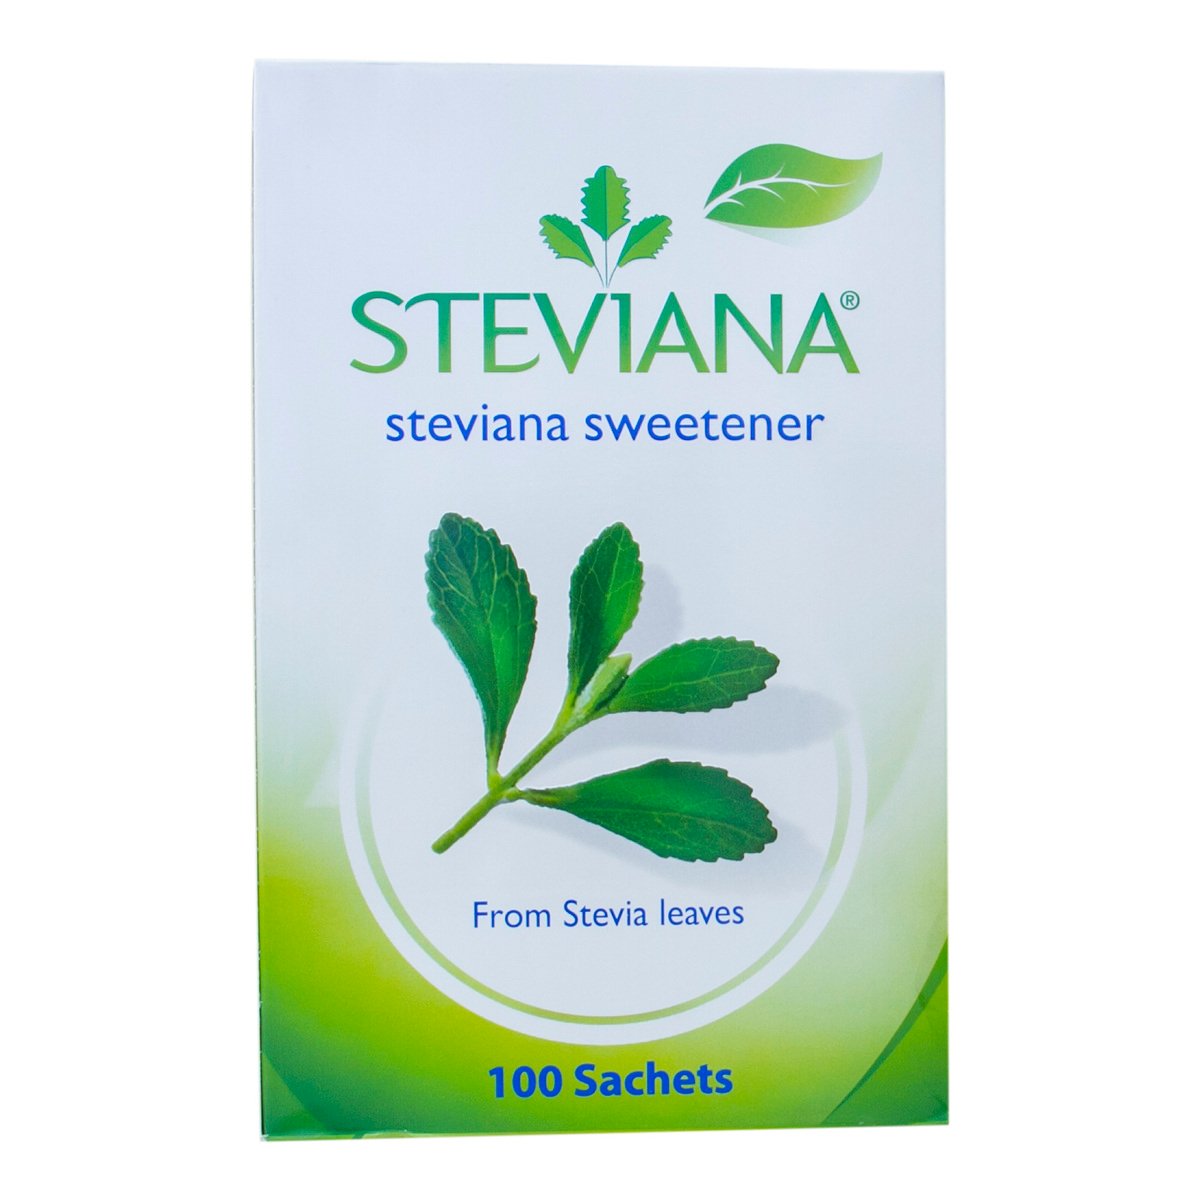 اشتري قم بشراء ستيفيانا محلي من ورق ستيفيا ١٠٠ جم Online at Best Price من الموقع - من لولو هايبر ماركت Sugar في السعودية